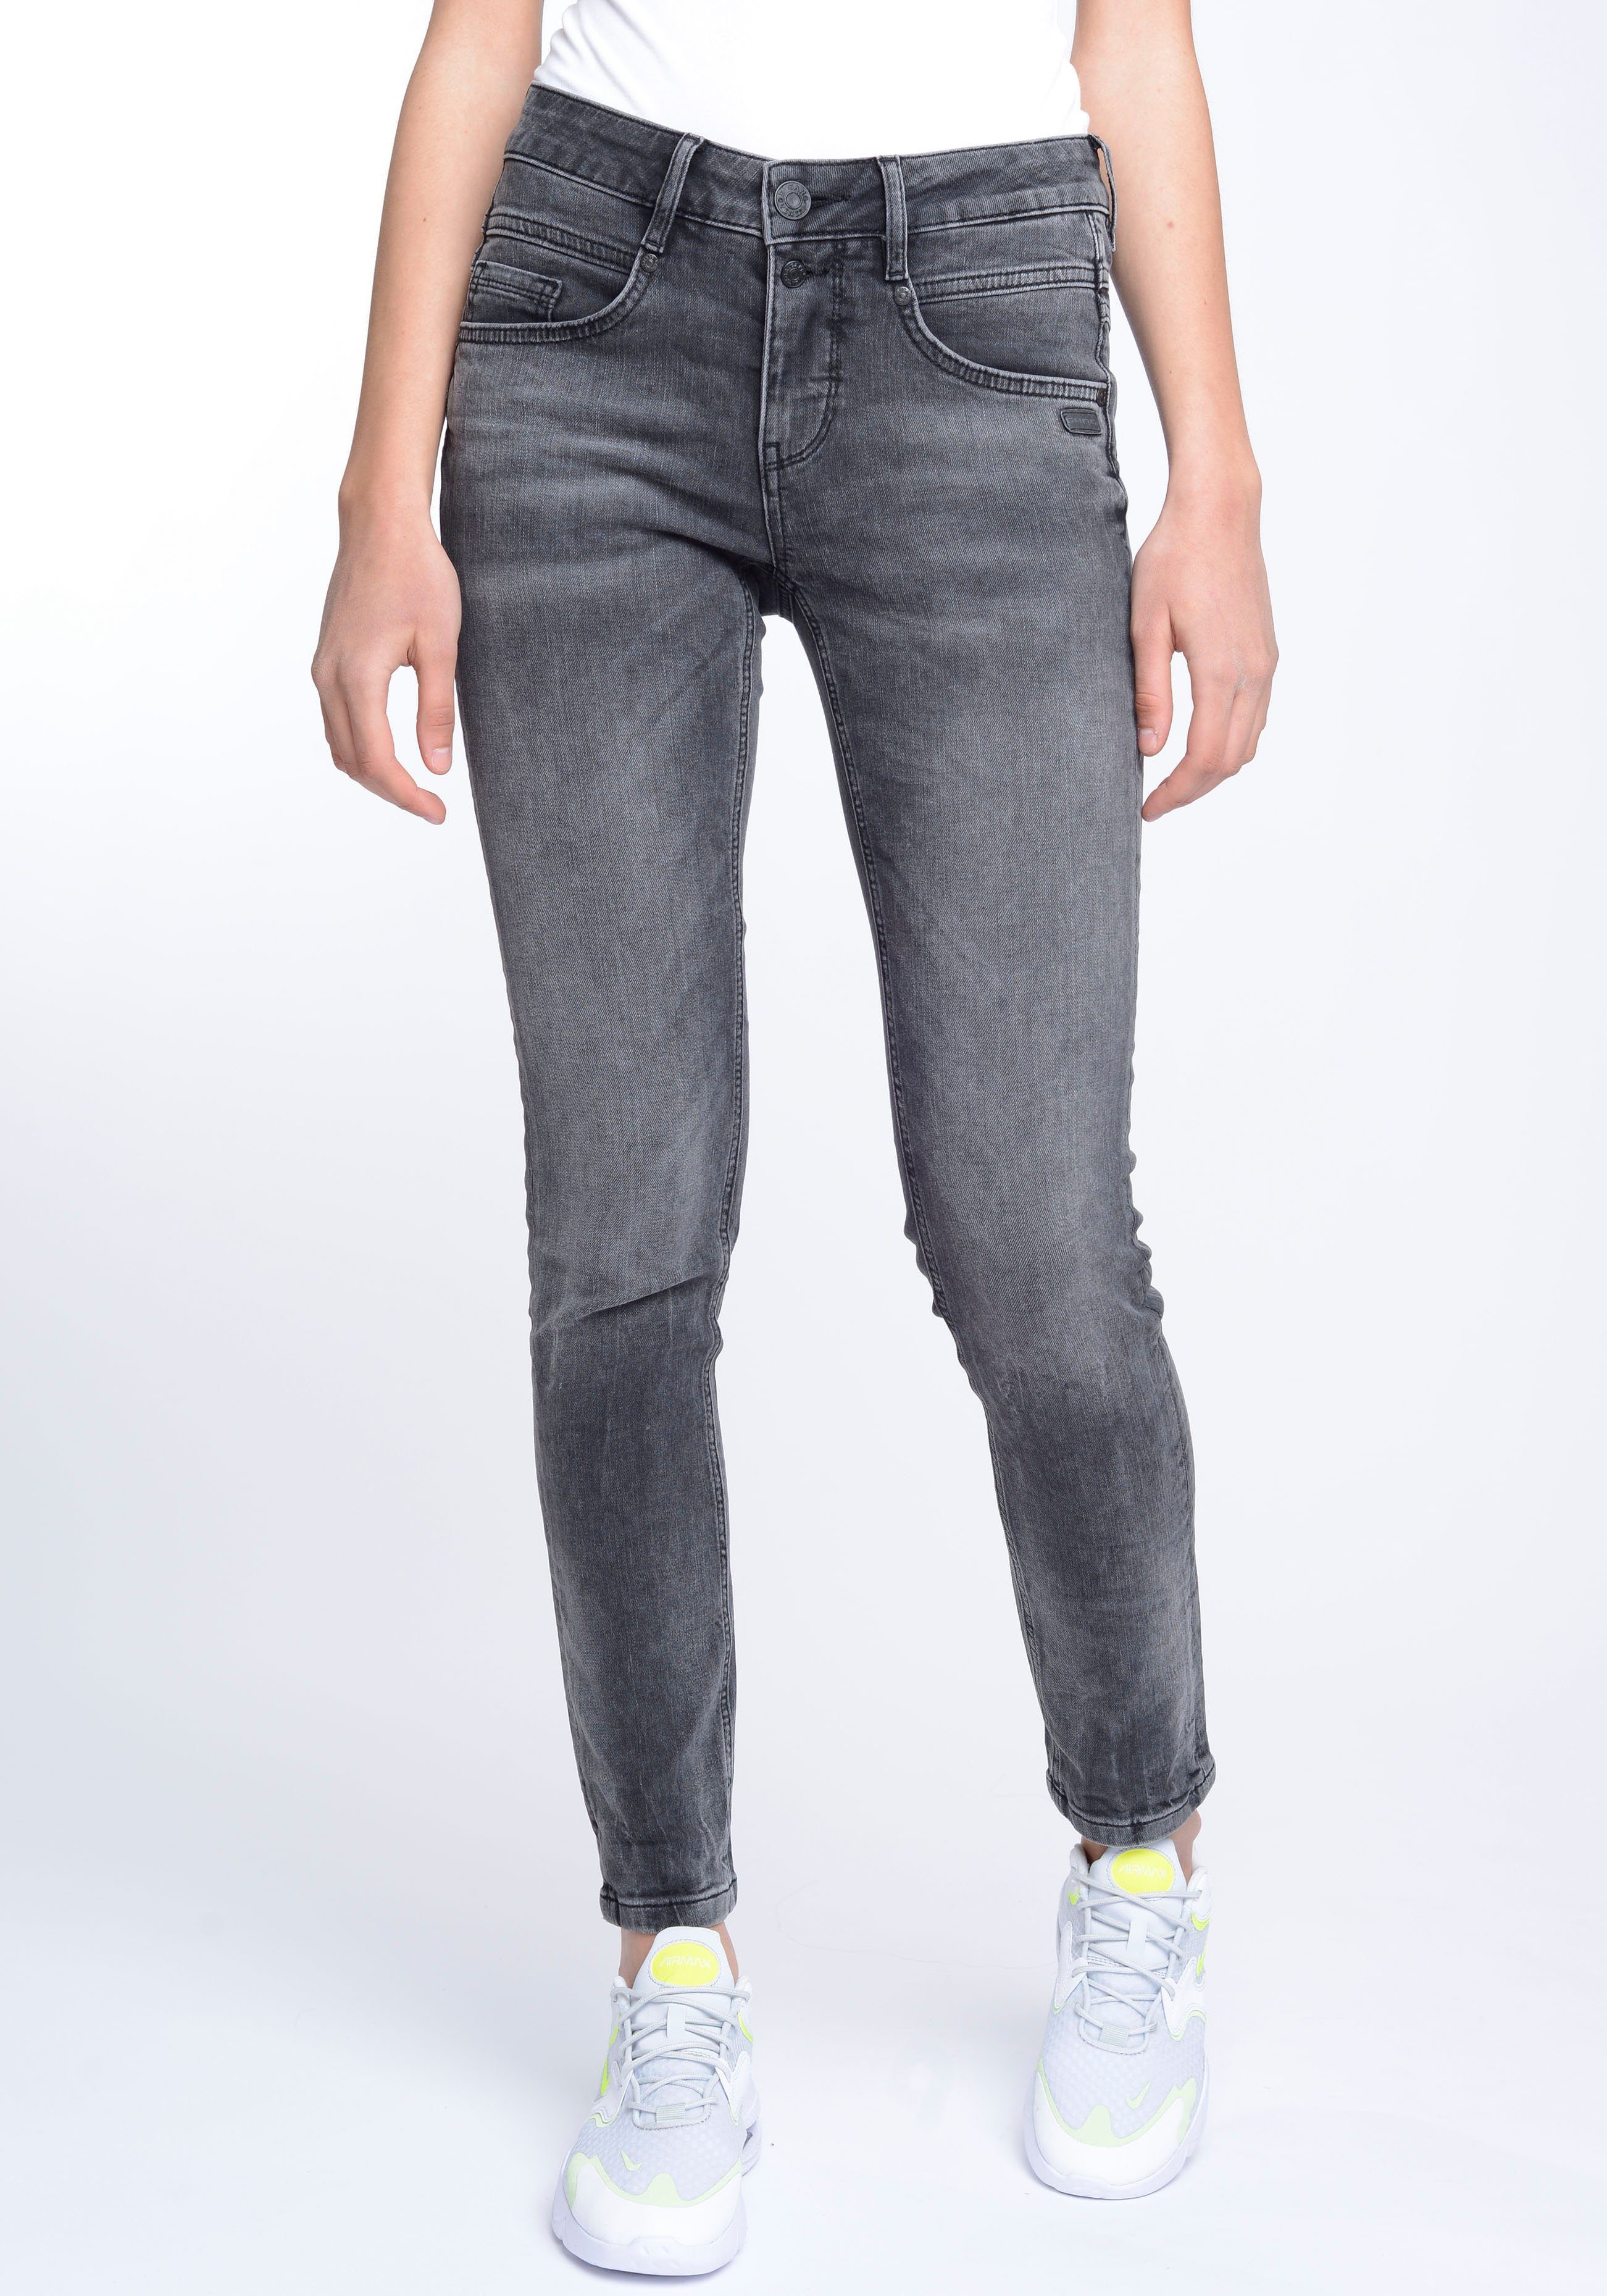 94MORA Passe Skinny-fit-Jeans GANG und vorne used 3-Knopf-Verschluss black mit